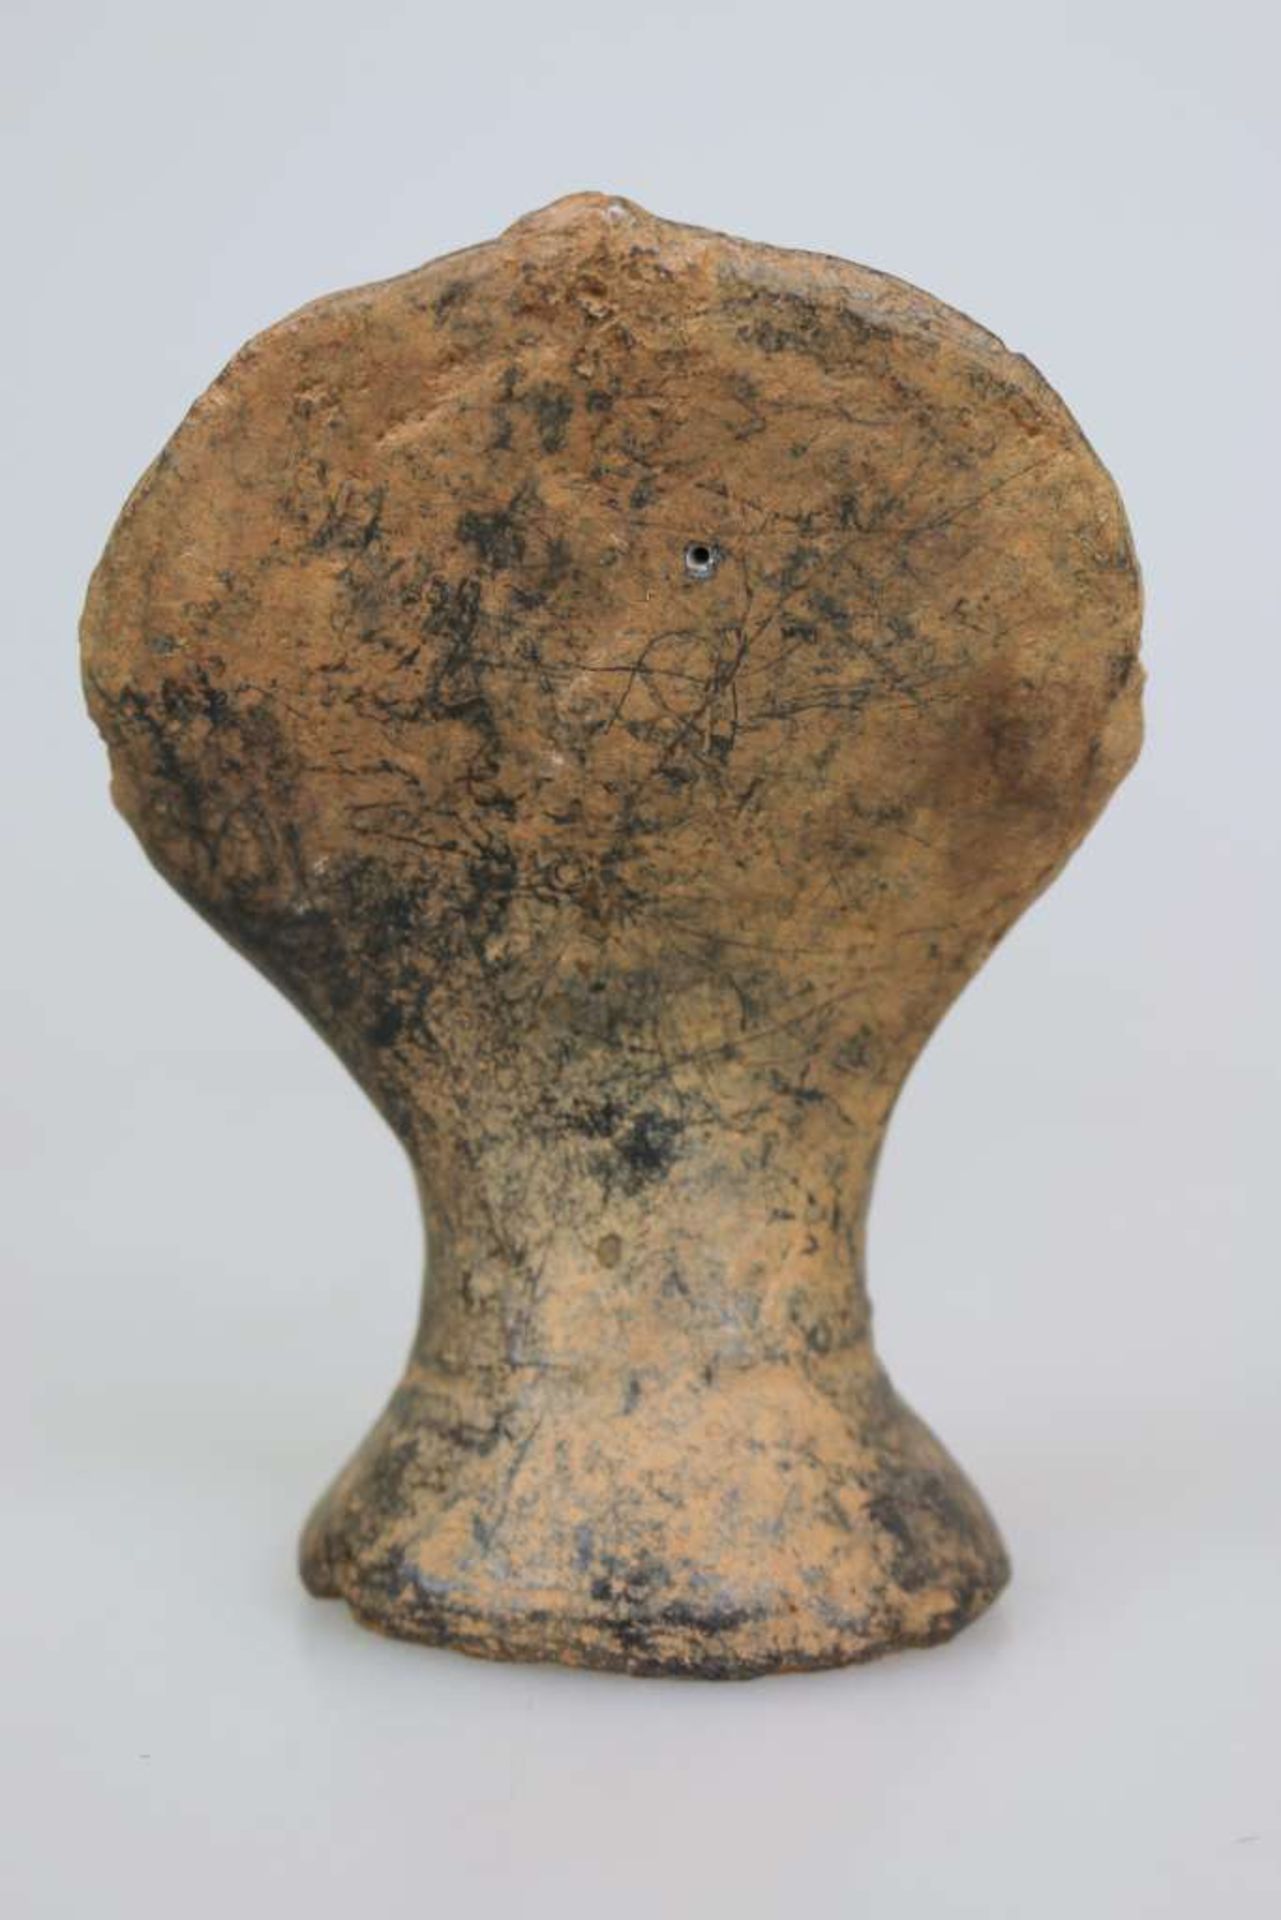 ASANTE AKAN, Ghana, Memorialkopf, gebrannter Ton mit Engobefassung, 19. Jh. (ca. 150 Jahre alt), bei - Image 2 of 4